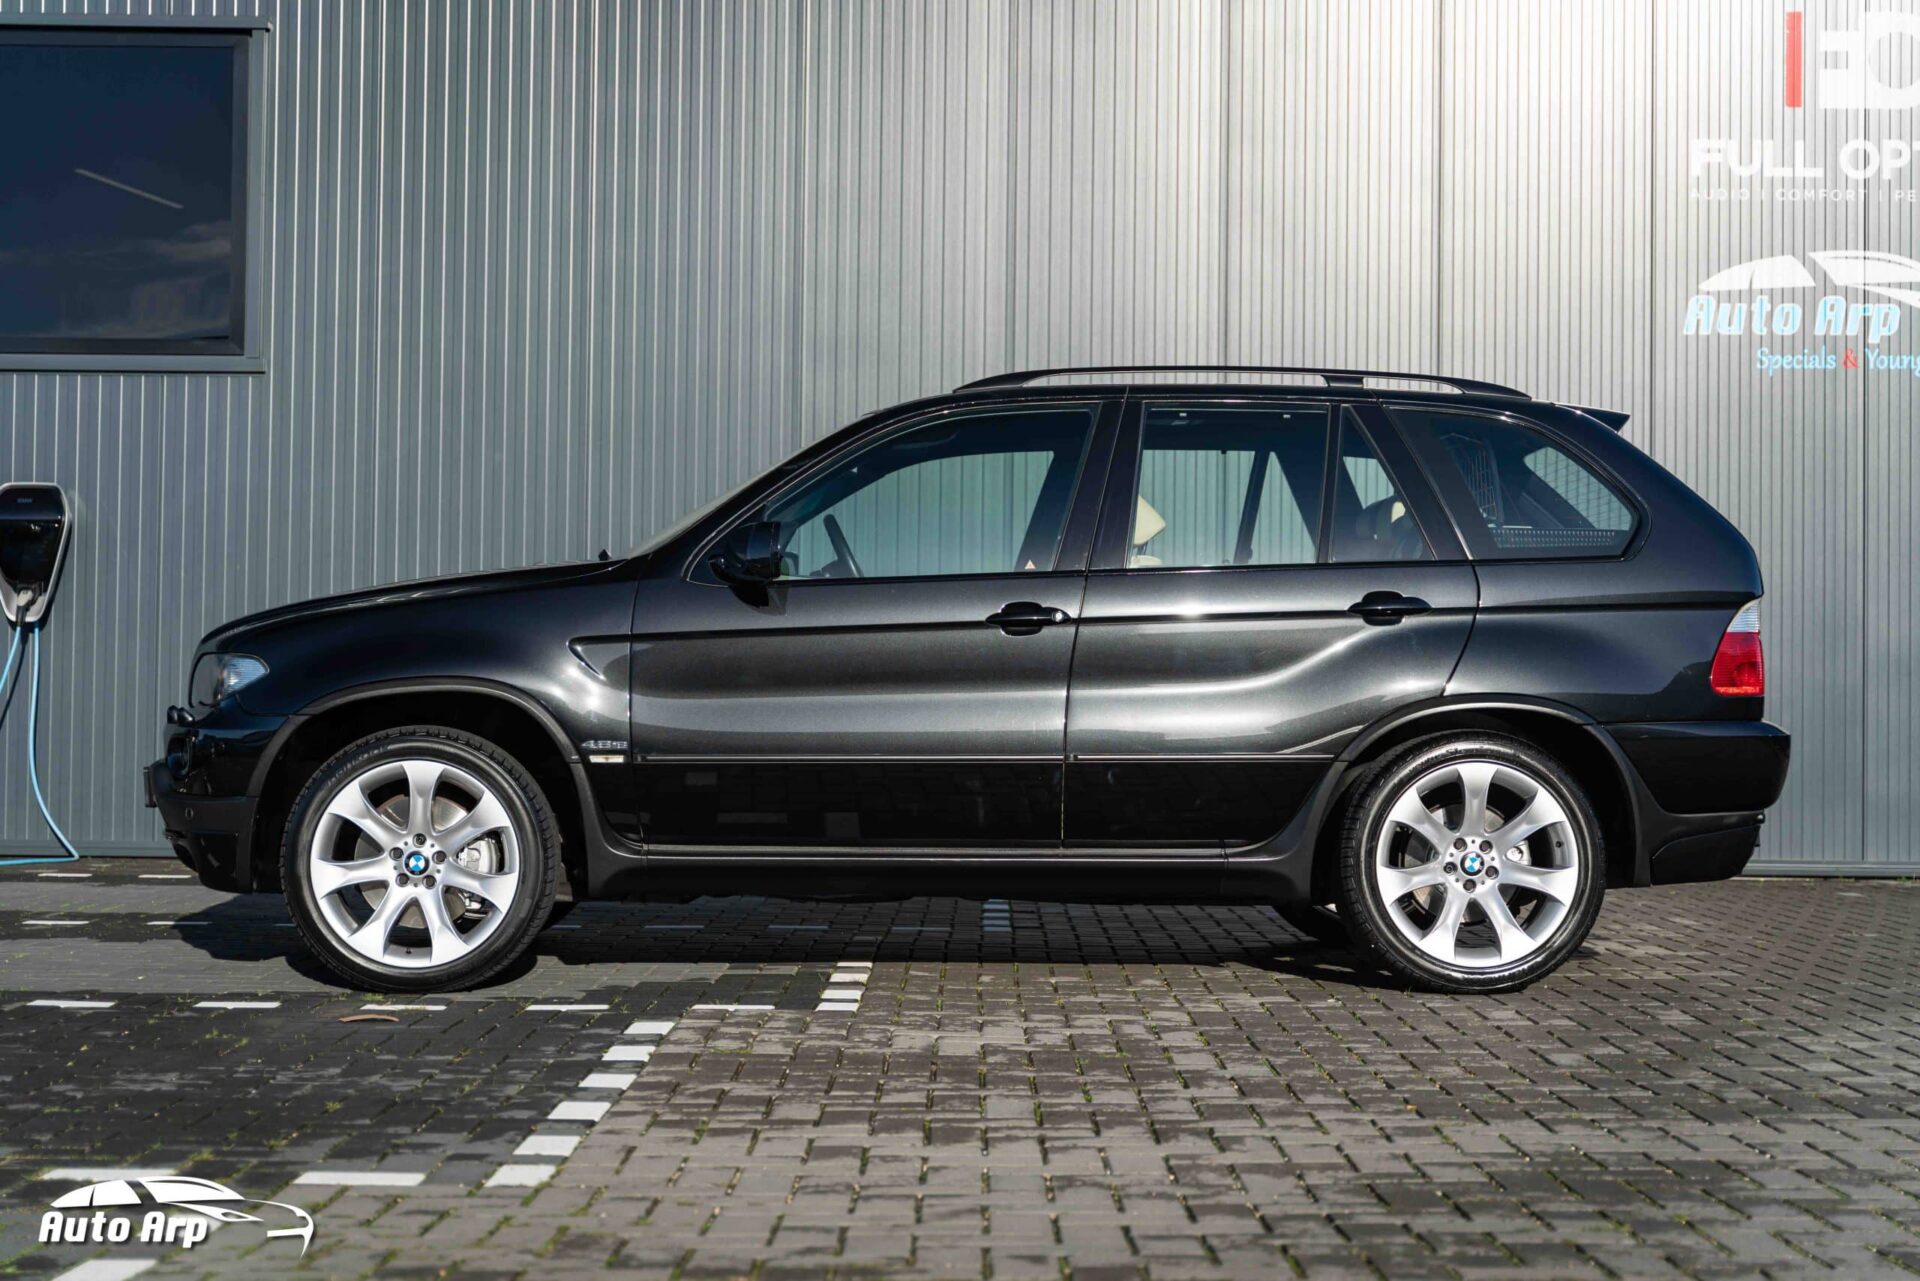 BMW E53 X5 4.8is ursprünglich niederländisch geliefert